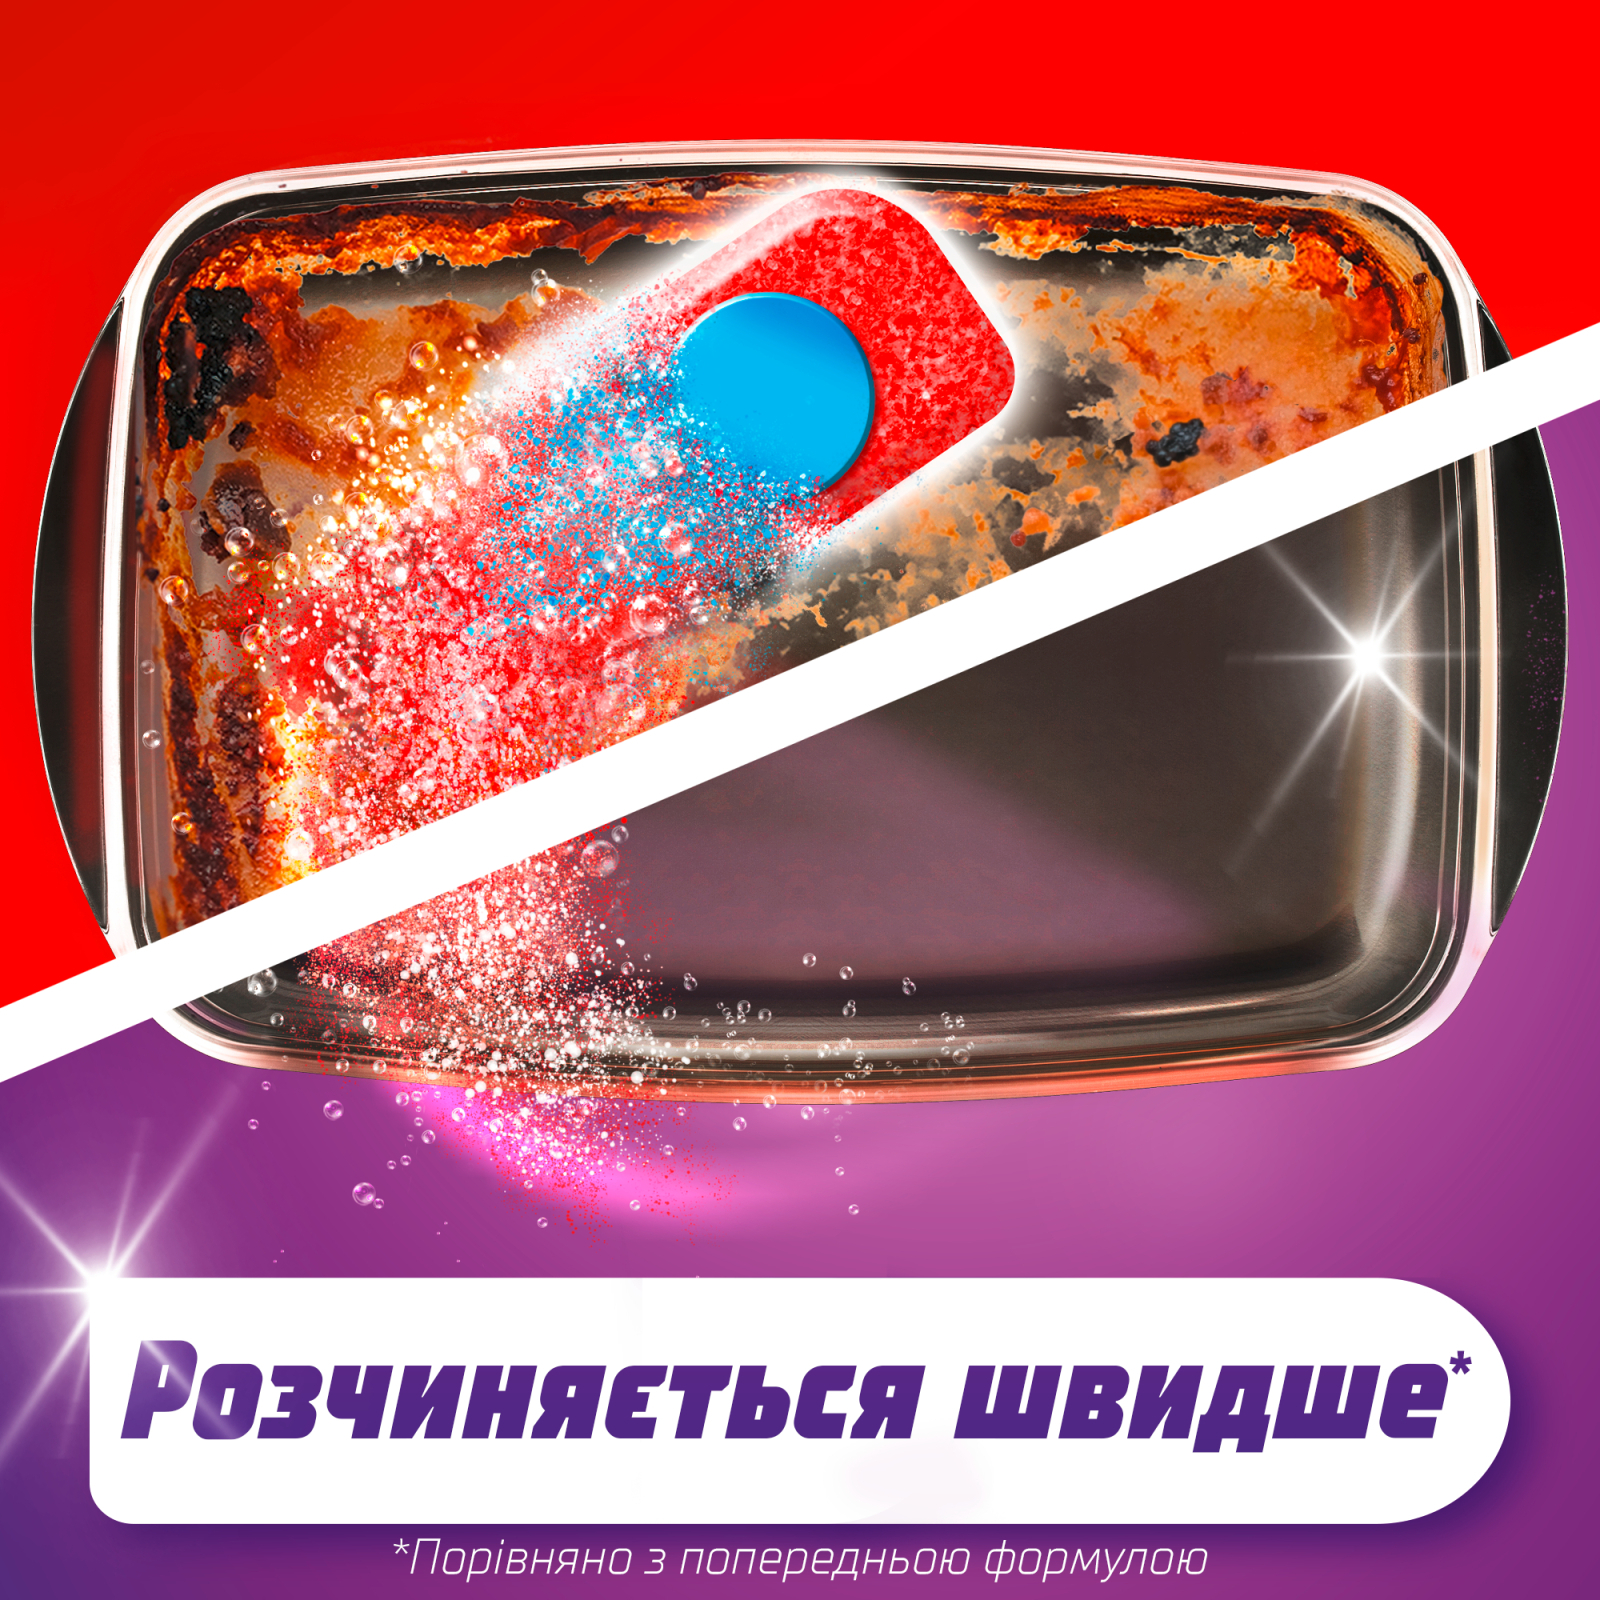 Таблетки для посудомийних машин Somat All in 1 24 шт. (9000101347777) зображення 2